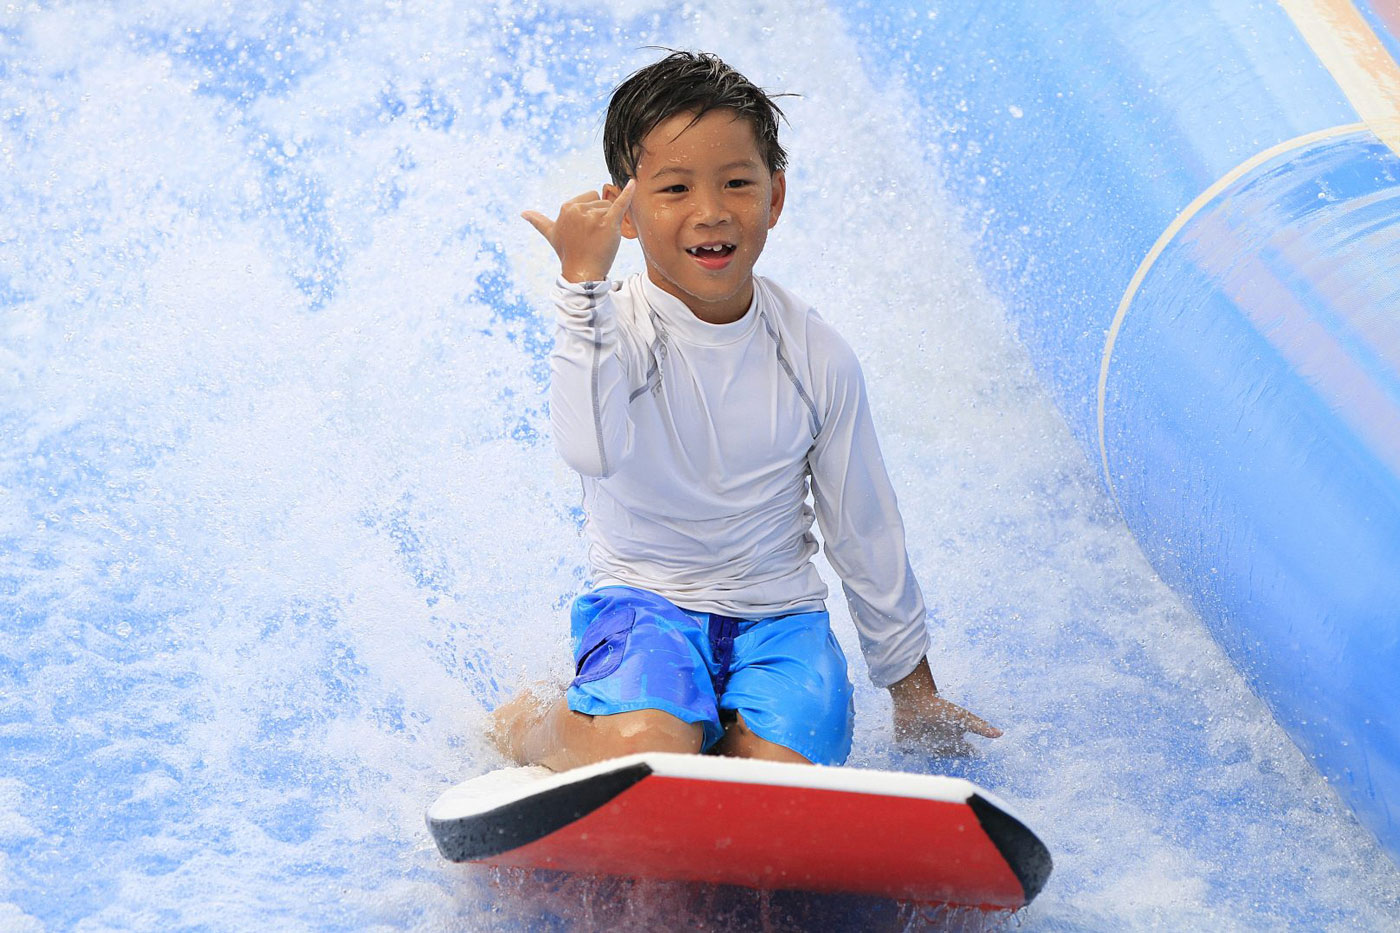 kid sliding water ride